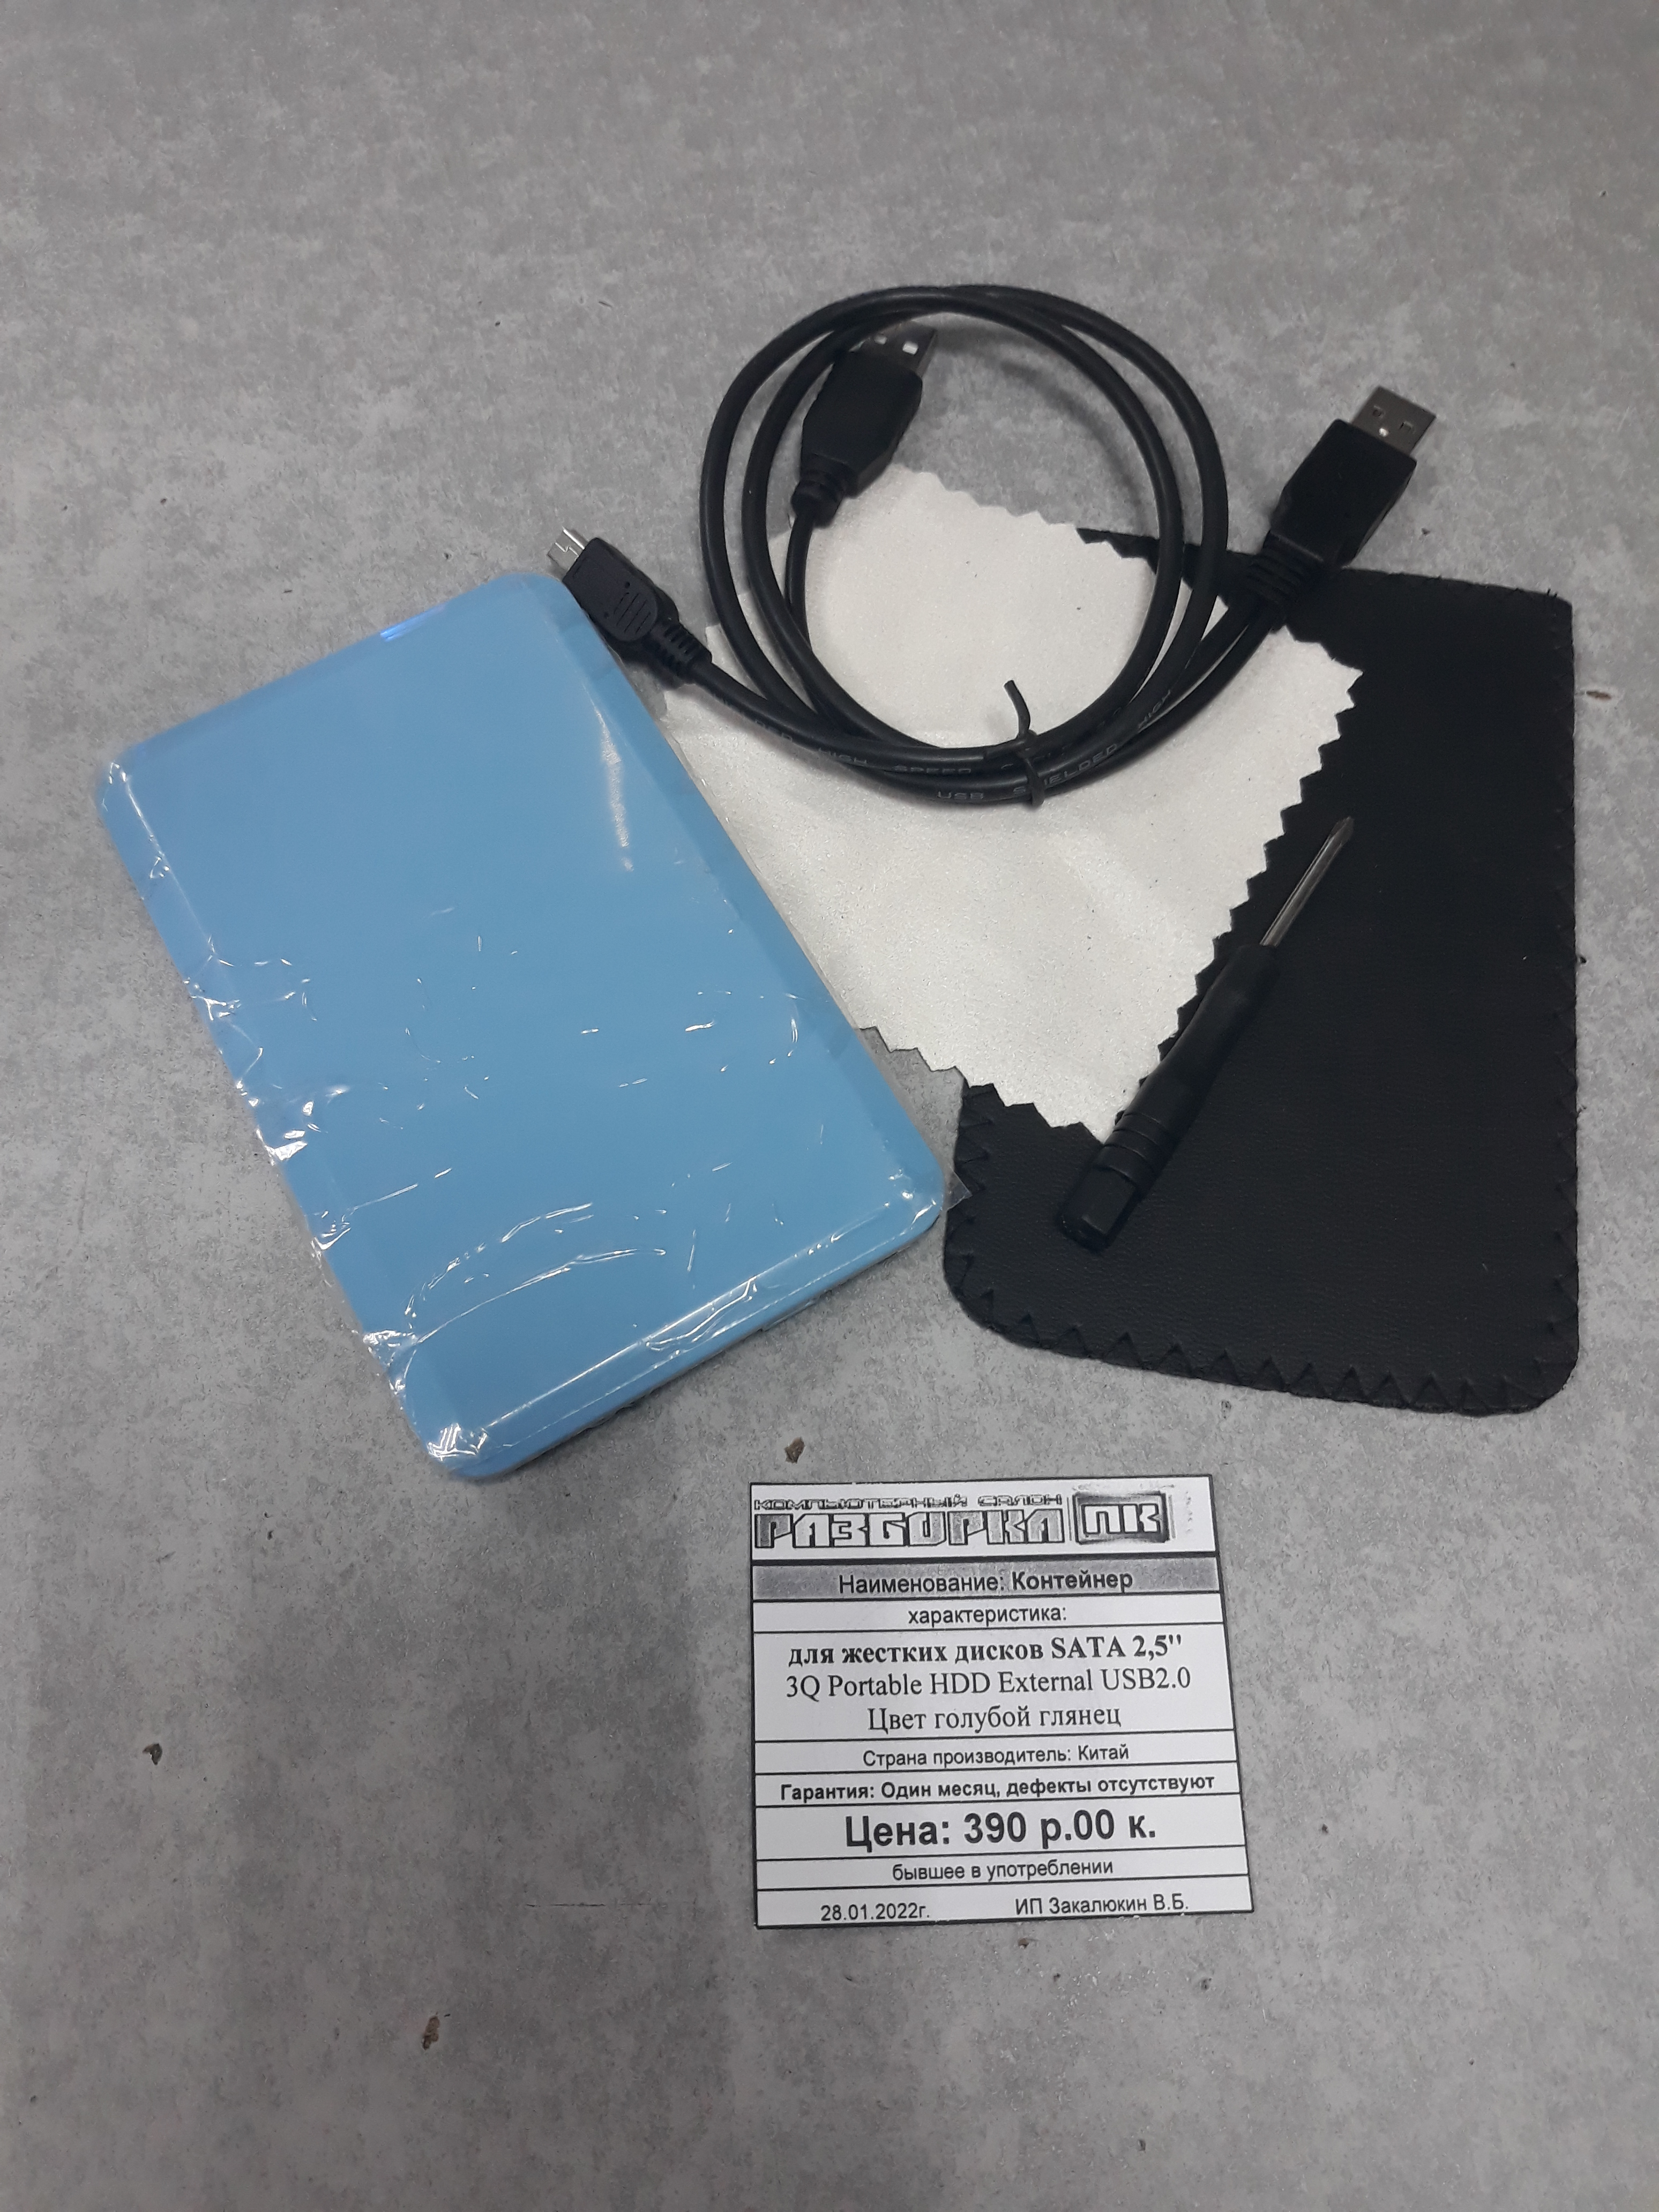 Контейнер для жестких дисков SATA 2,5'' 3Q Portable HDD External USB2.0 голубой глянец